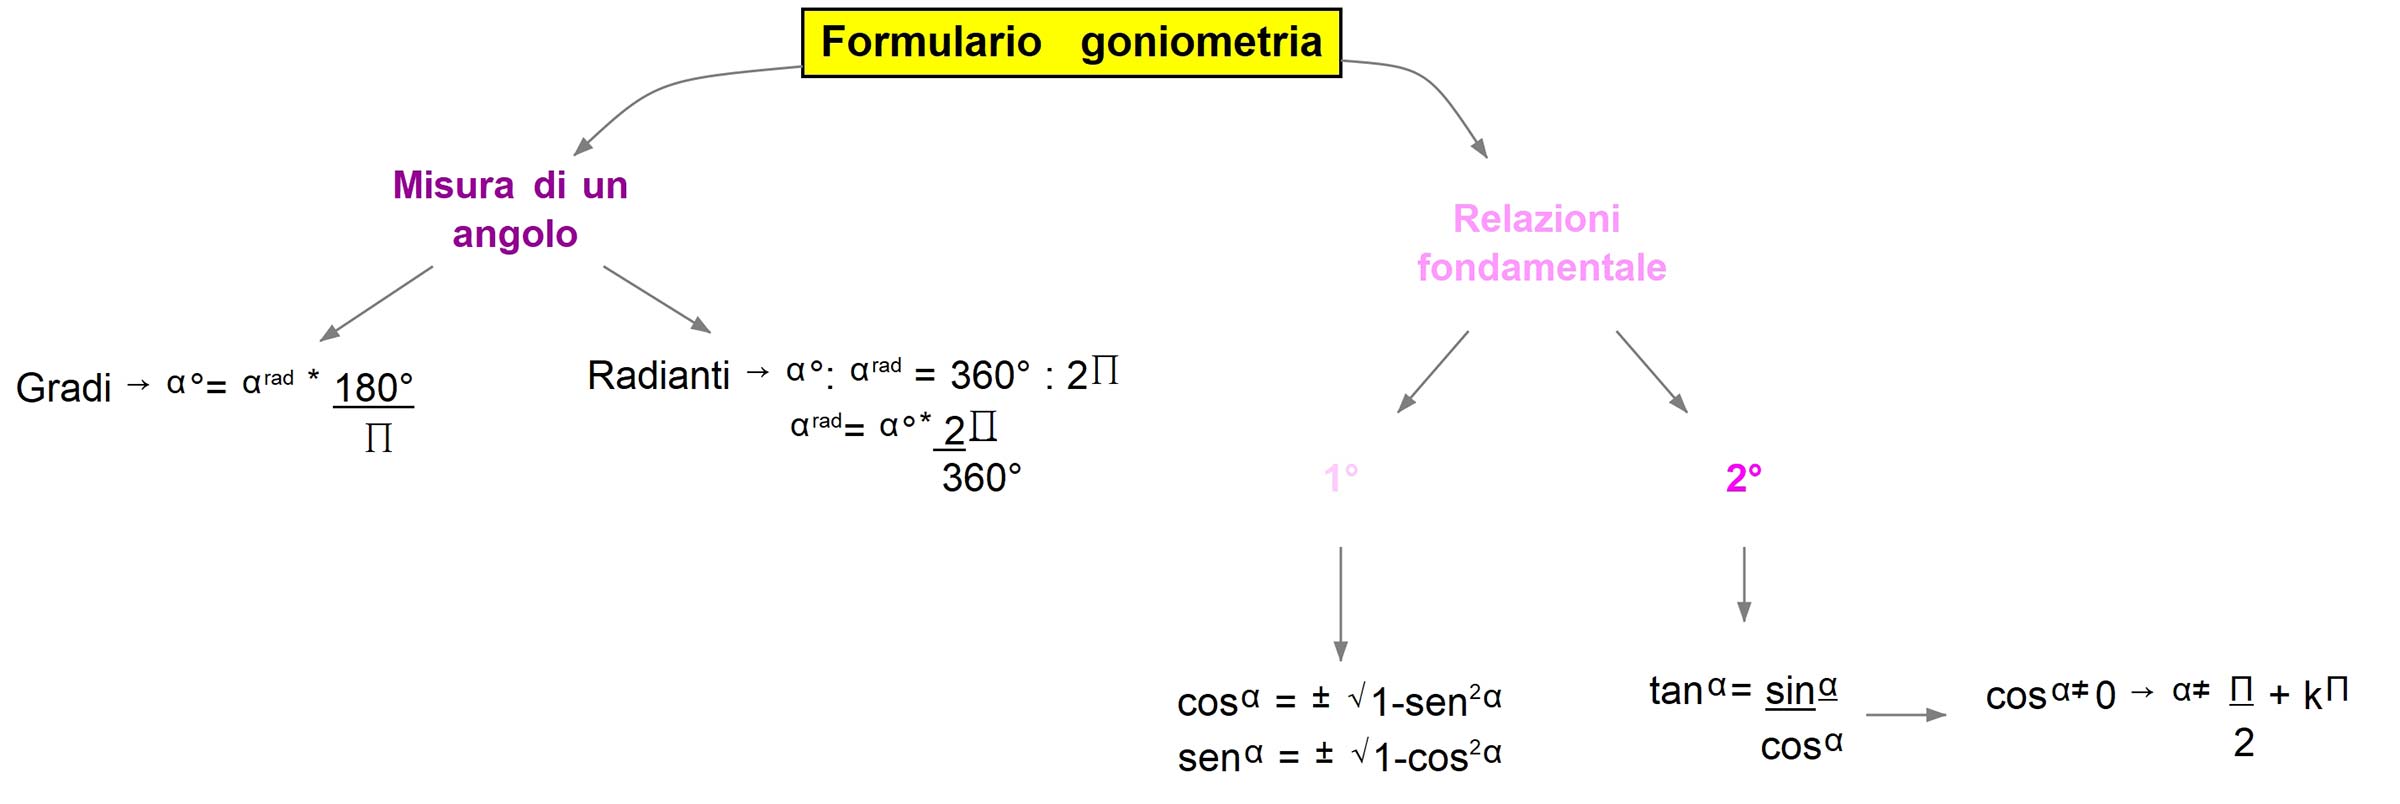 Formulario goniometria